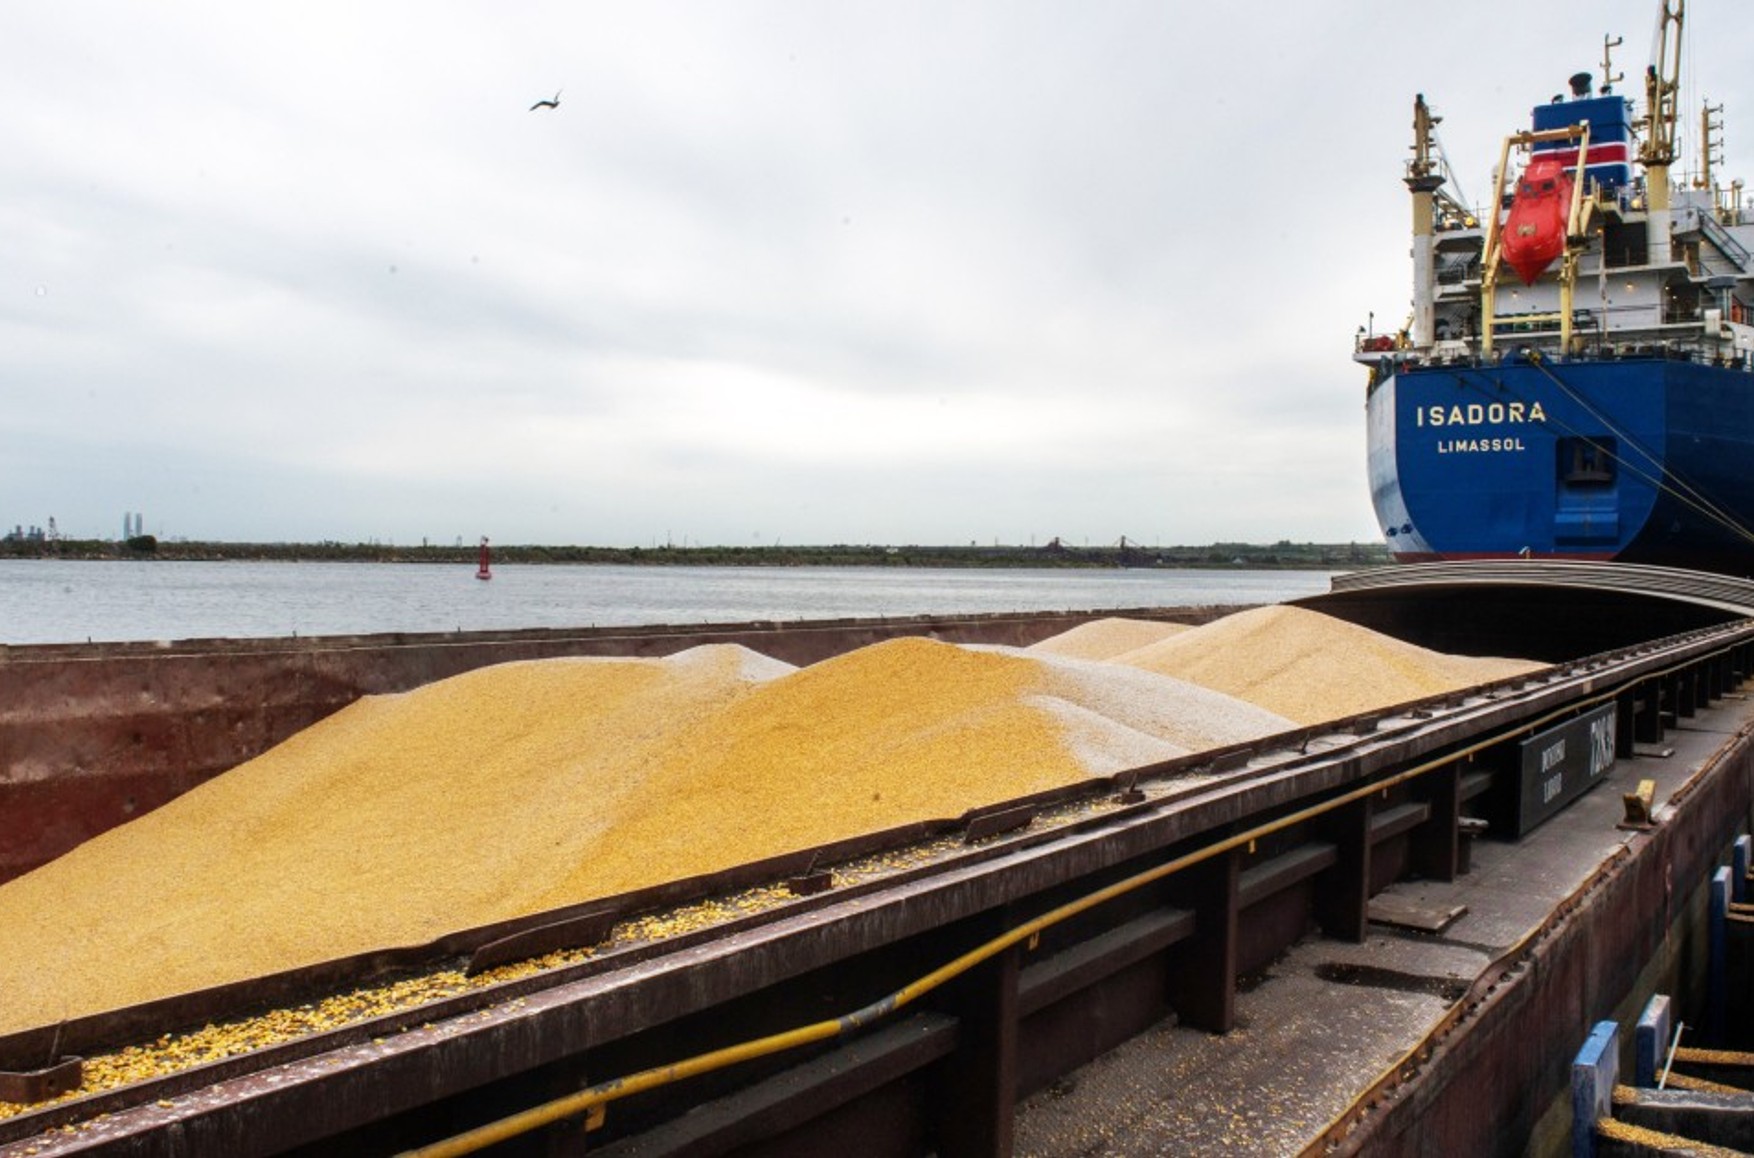 Отправка судов с продовольствием из Украины по «зерновому коридору» возобновится 3 ноября — украинские власти